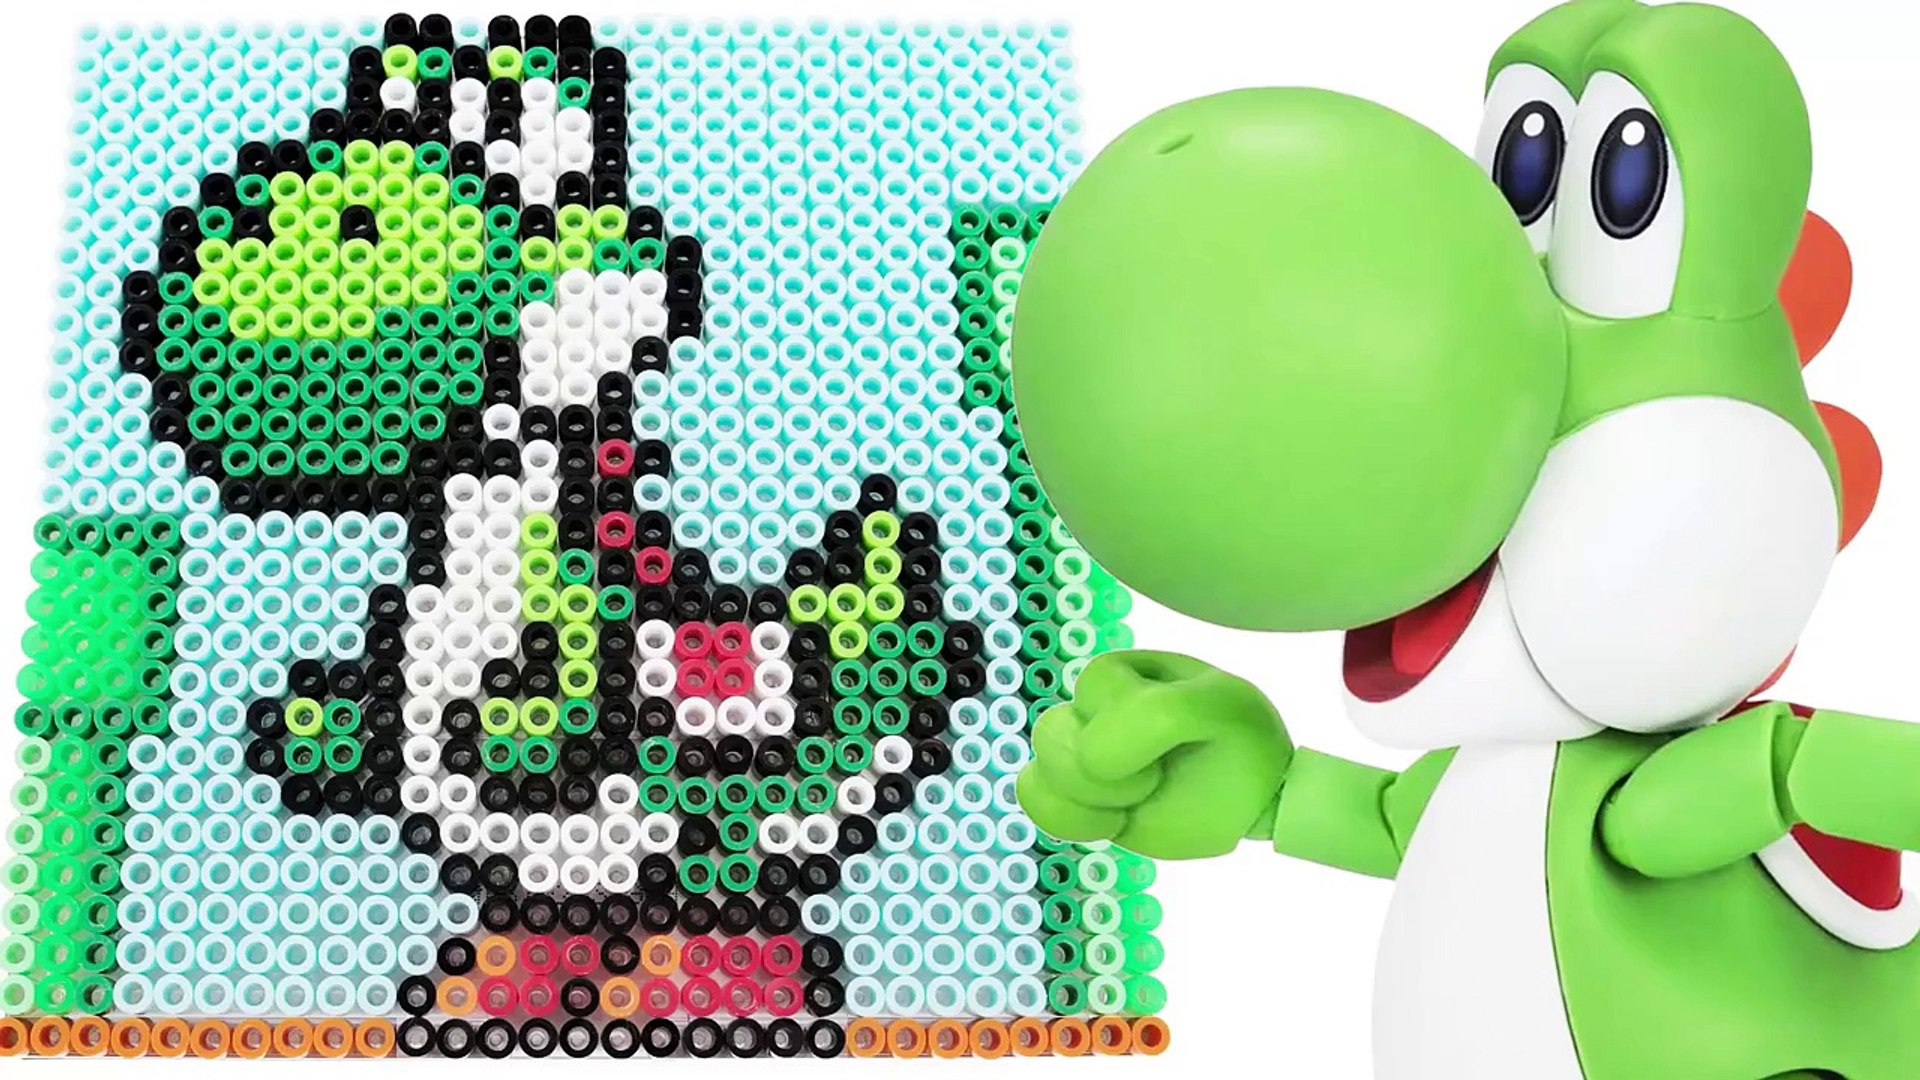 スーパーマリオブラザーズ ヨッシーのドット絵をビーズで描く Ppcandy Channel Super Mario Pixel Art Parlor Beads Minecraft Dailymotion Video